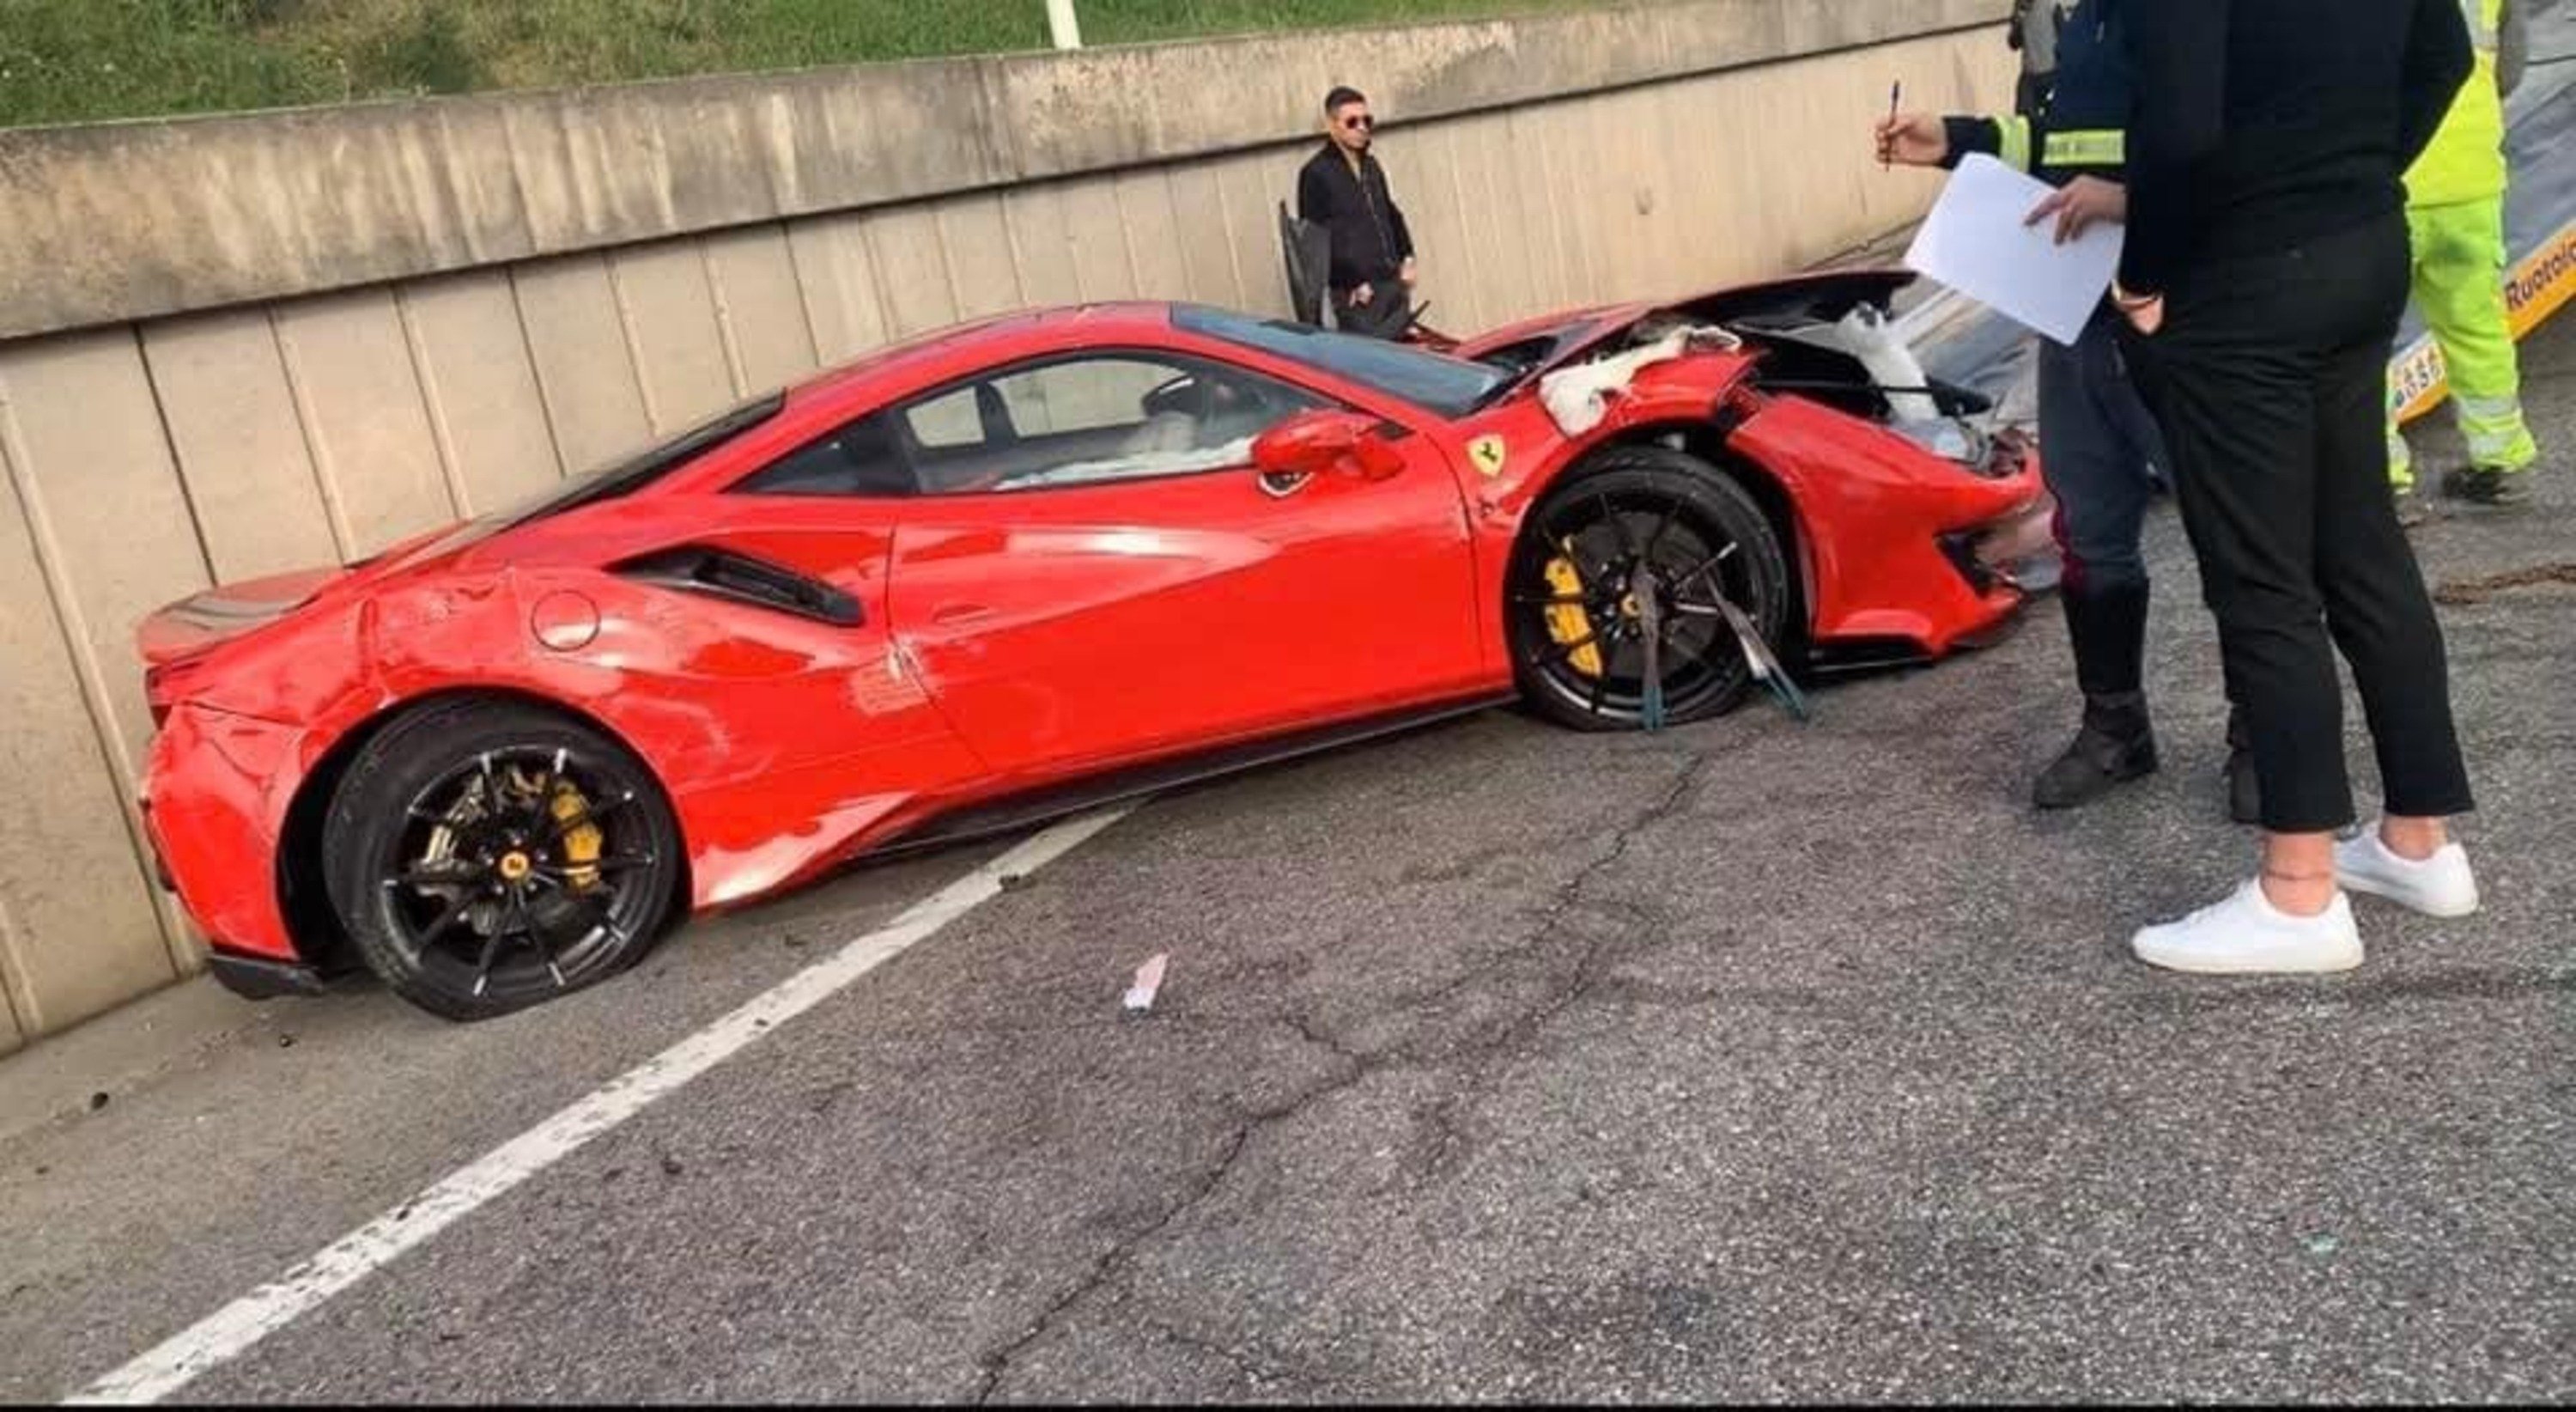 Incidente Ferrari causa code sulla A4: 488 distrutta, accesso chiuso con rallentamenti e curiosi [Foto Gallery &amp; Video]